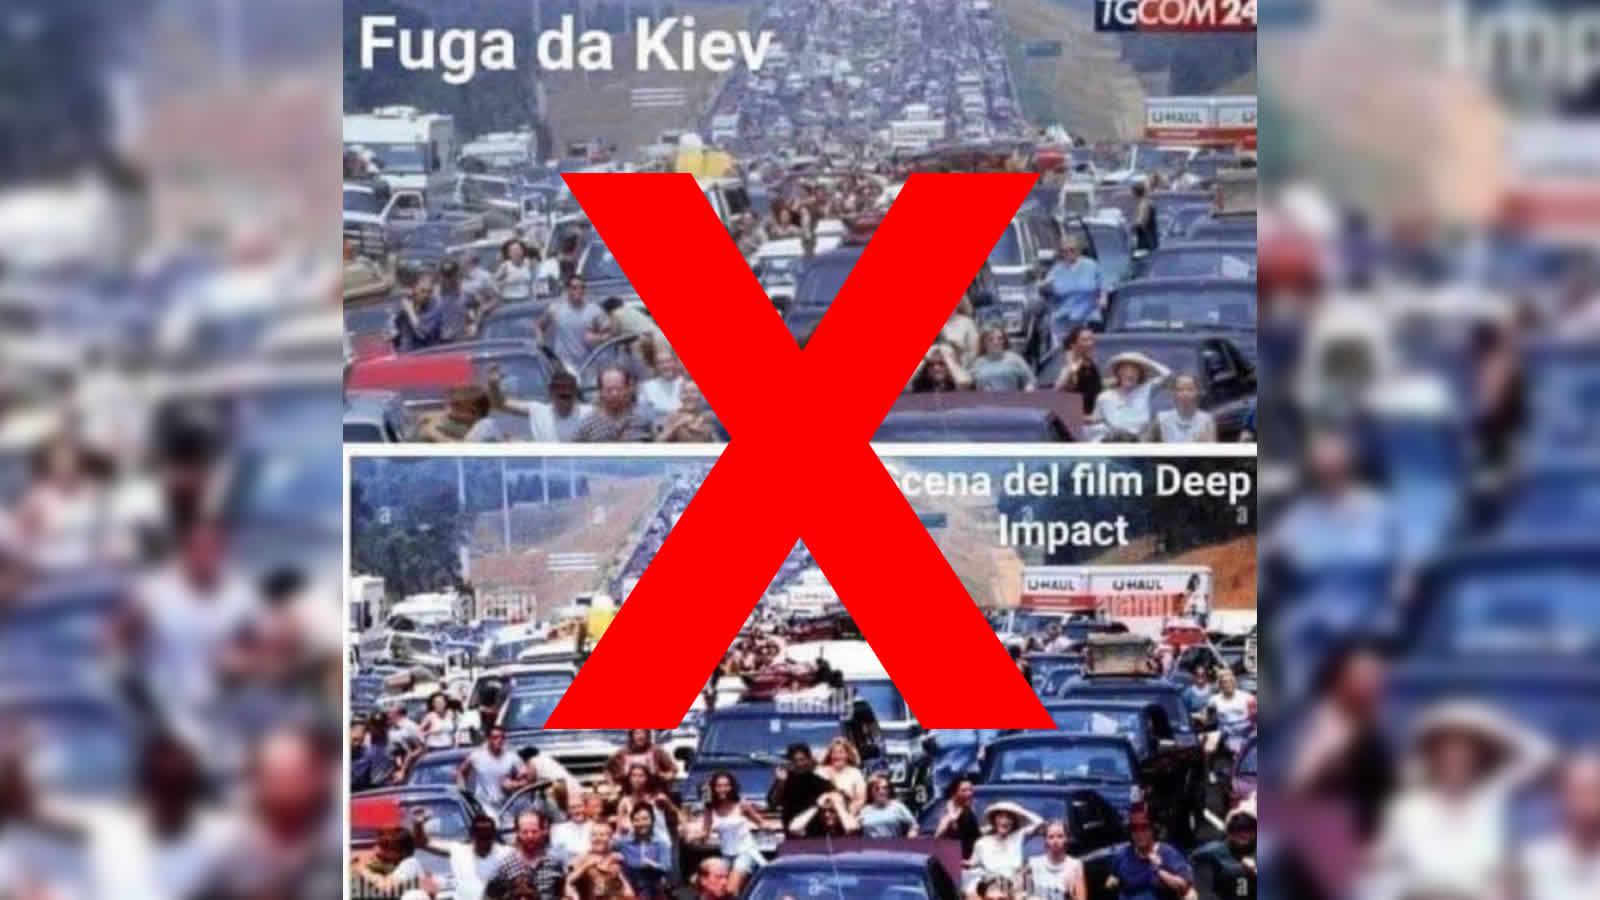 Auf einem Sharepic wird behauptet, dass ein italienischer TV-Sender über Flüchtende in Kiew berichtete, dabei aber Bilder aus dem Film „Deep Impact“ zeigte.